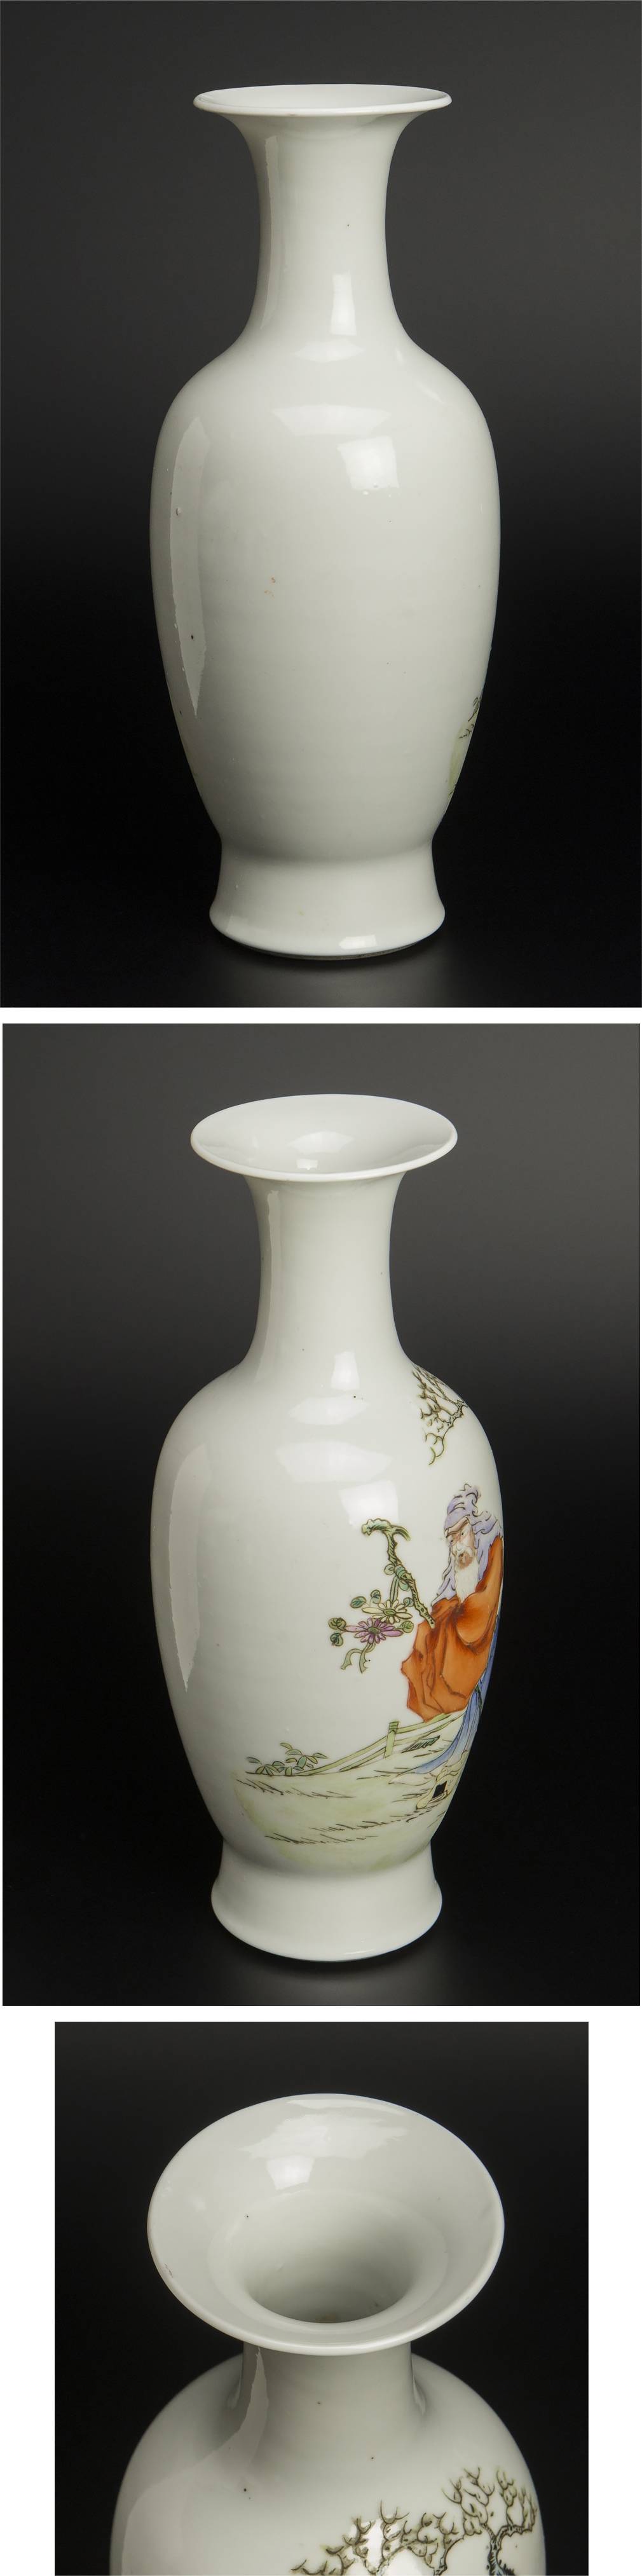 特価正規品清 粉彩人物紋瓶 乾隆年制款 中国 古美術 清